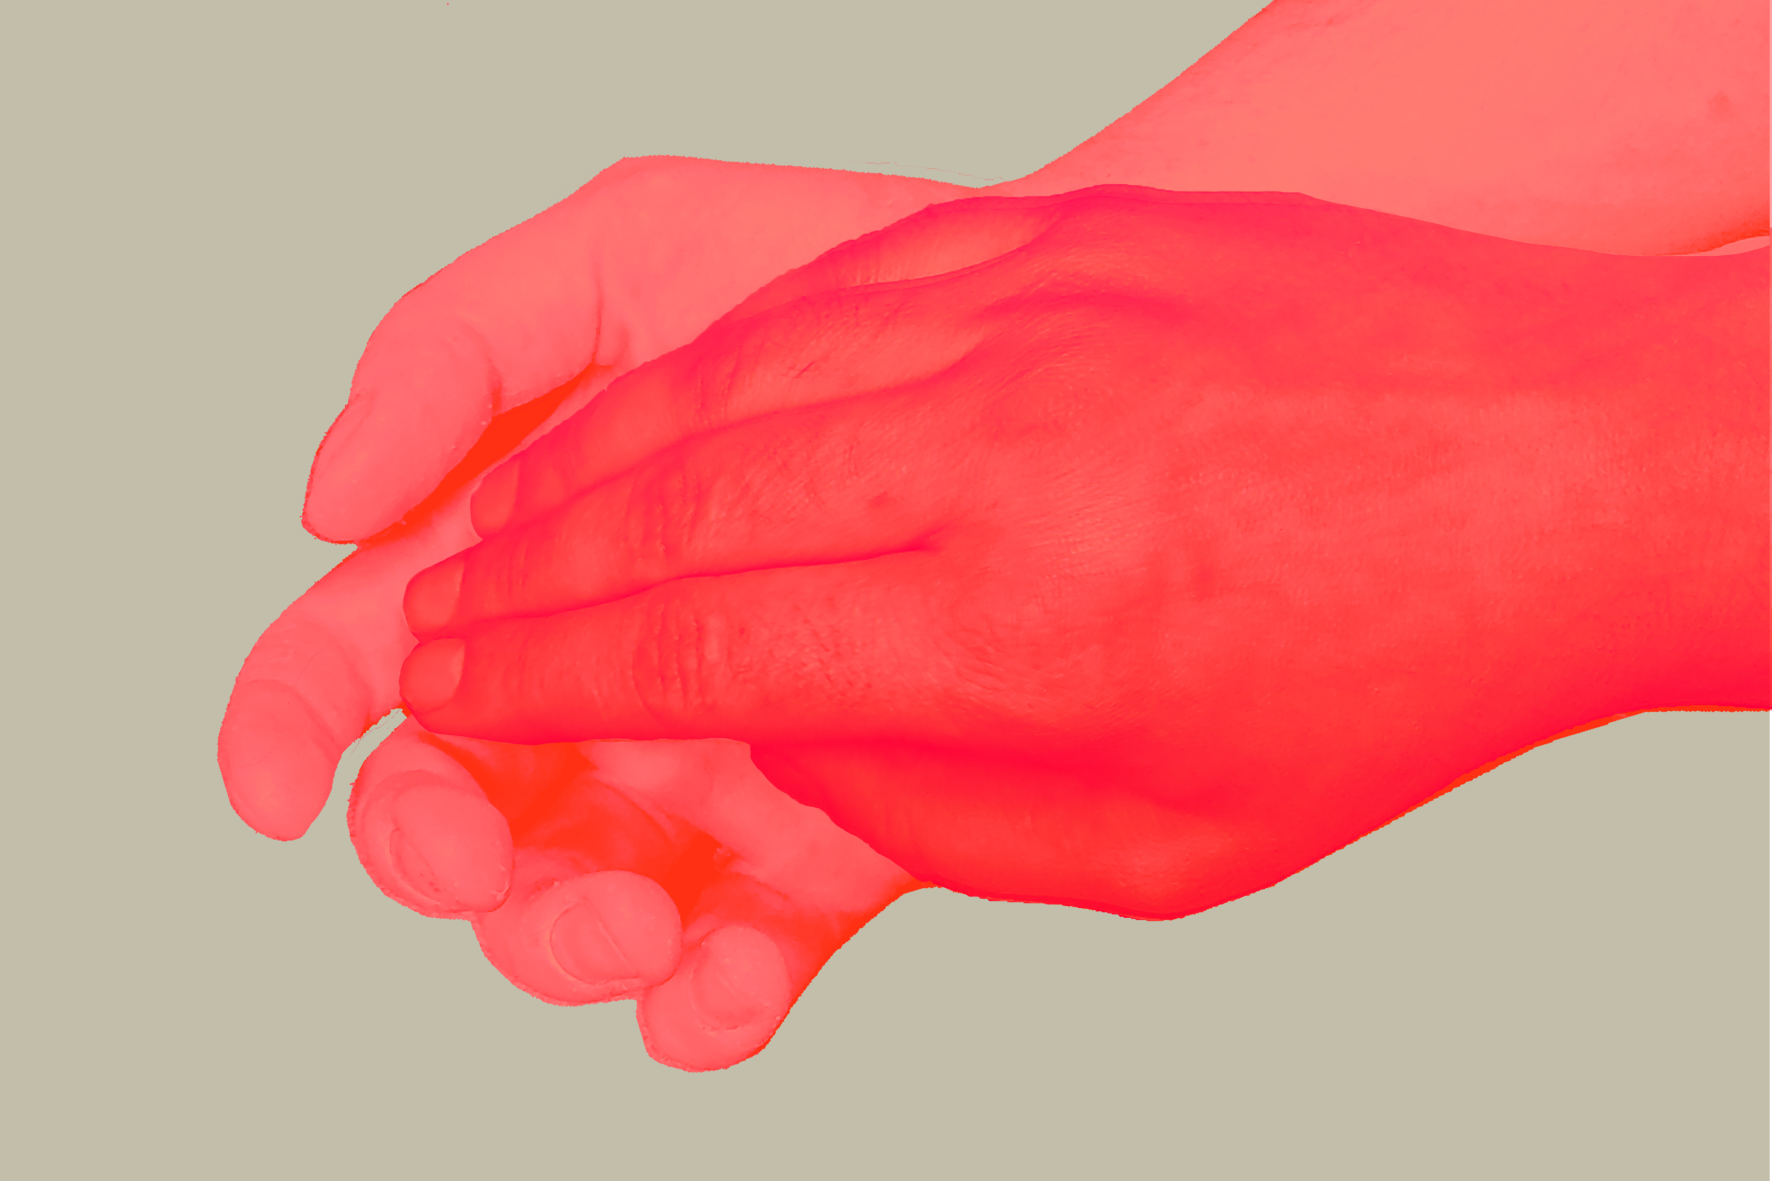 grafika | dwie czerwone ręce ułożone jedna na drugiej na bezowym tle